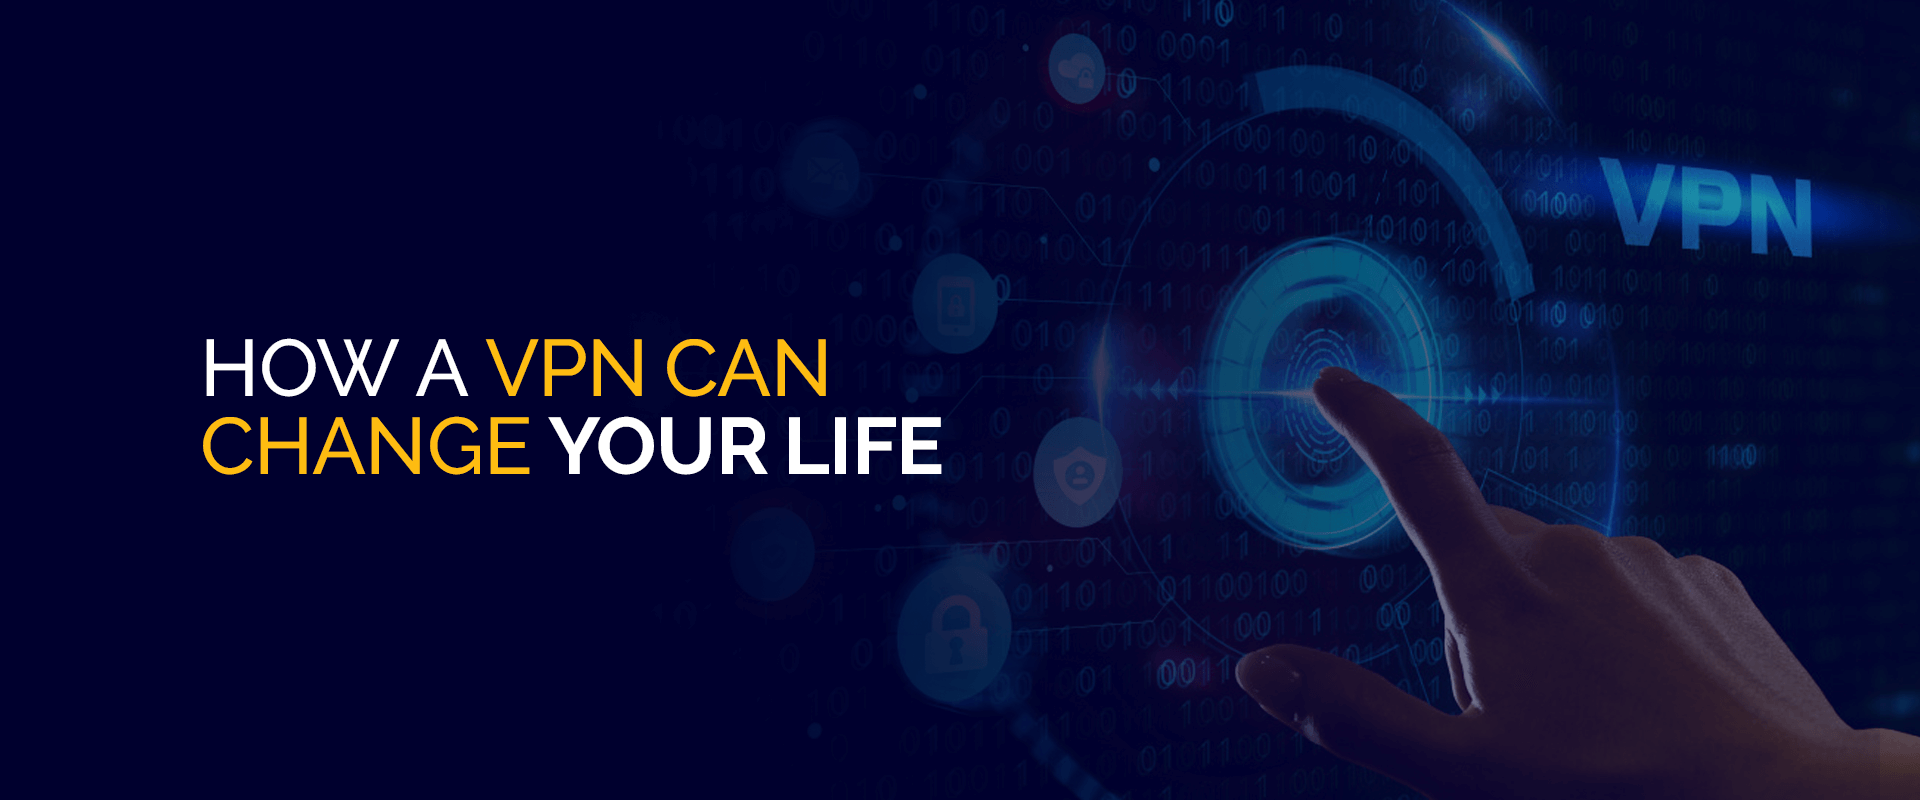 Hoe een VPN uw leven kan veranderen